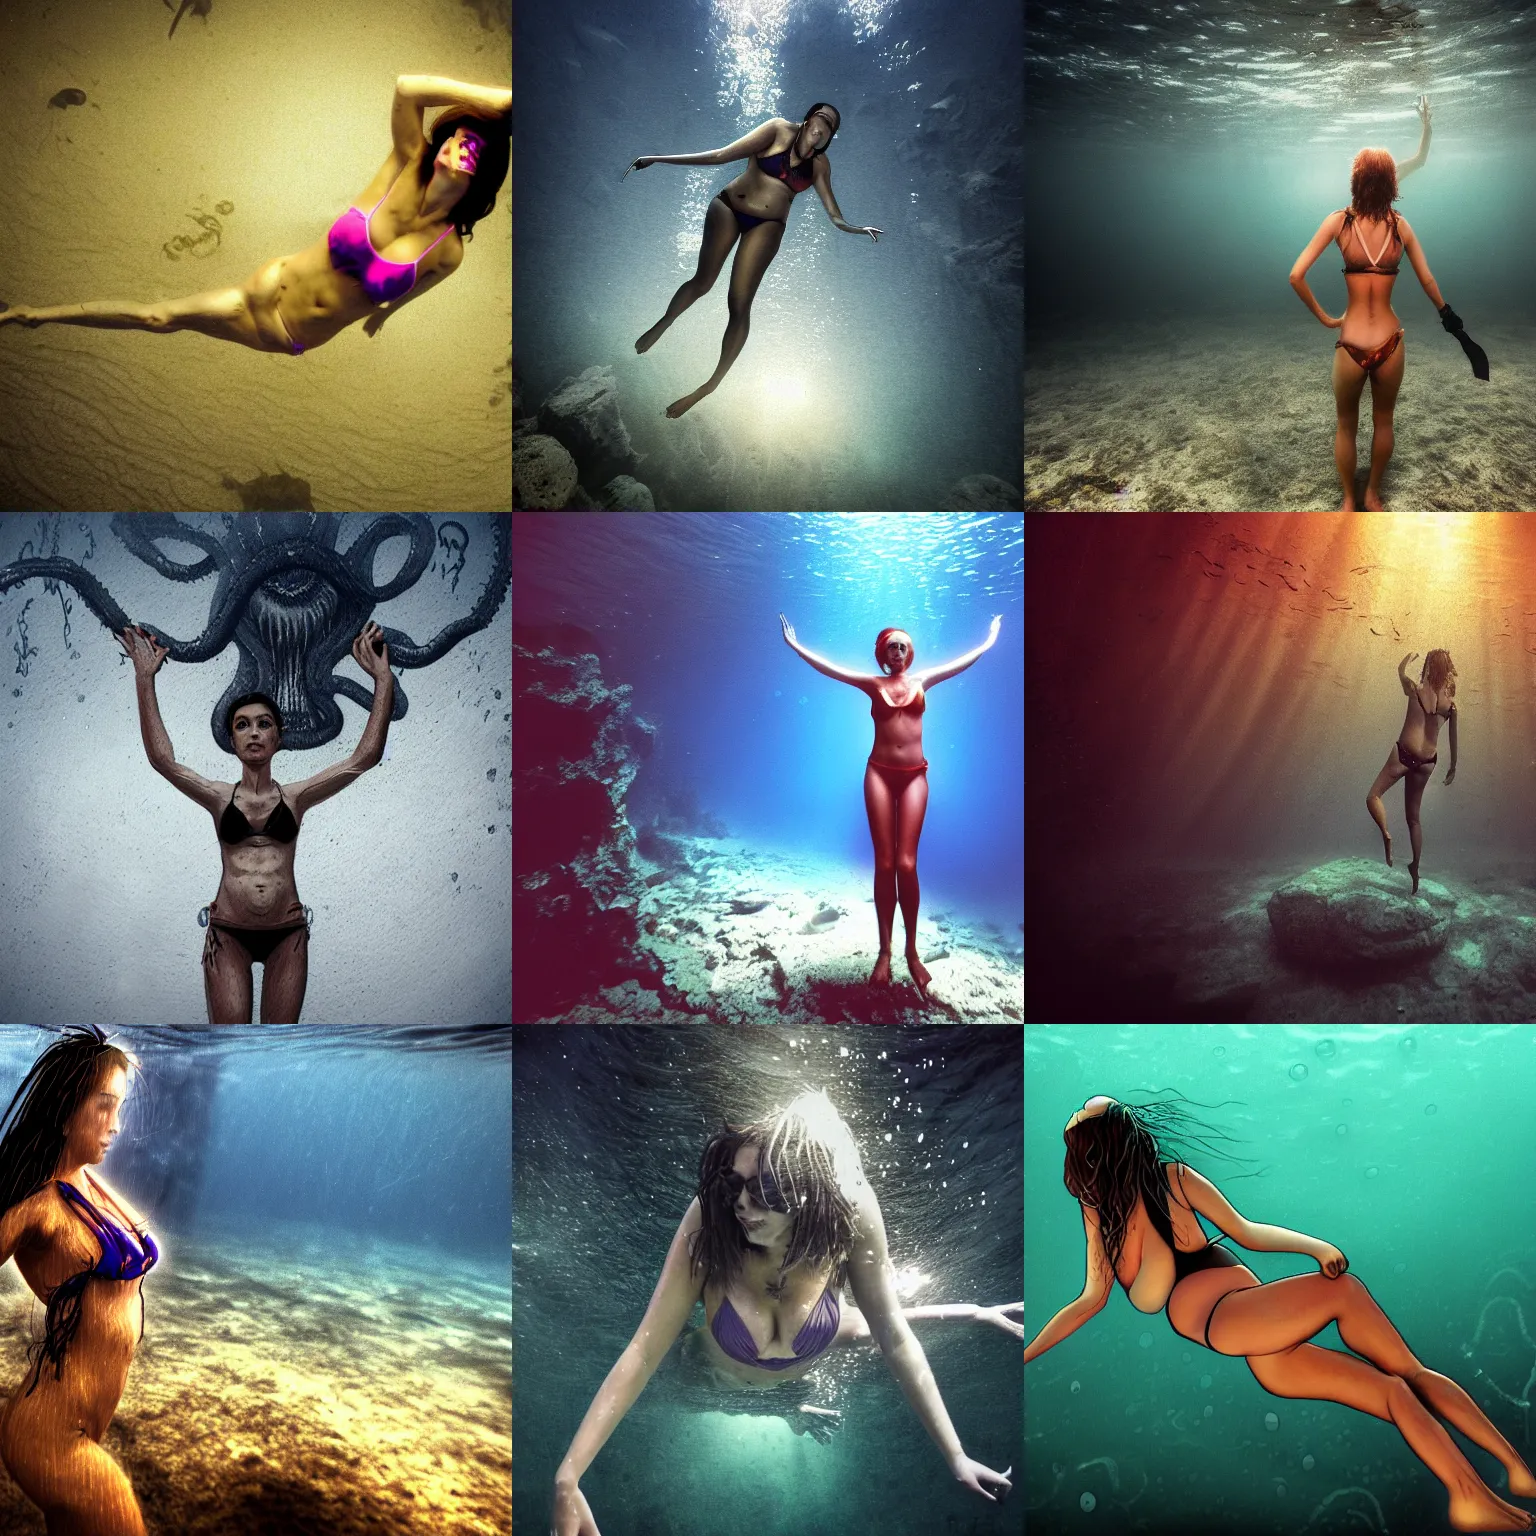 Prompt: woman in bikini freediving with Ctulhu, dimly lit underwater, HD wallpaper, in the style of lovecraftian horror fan art